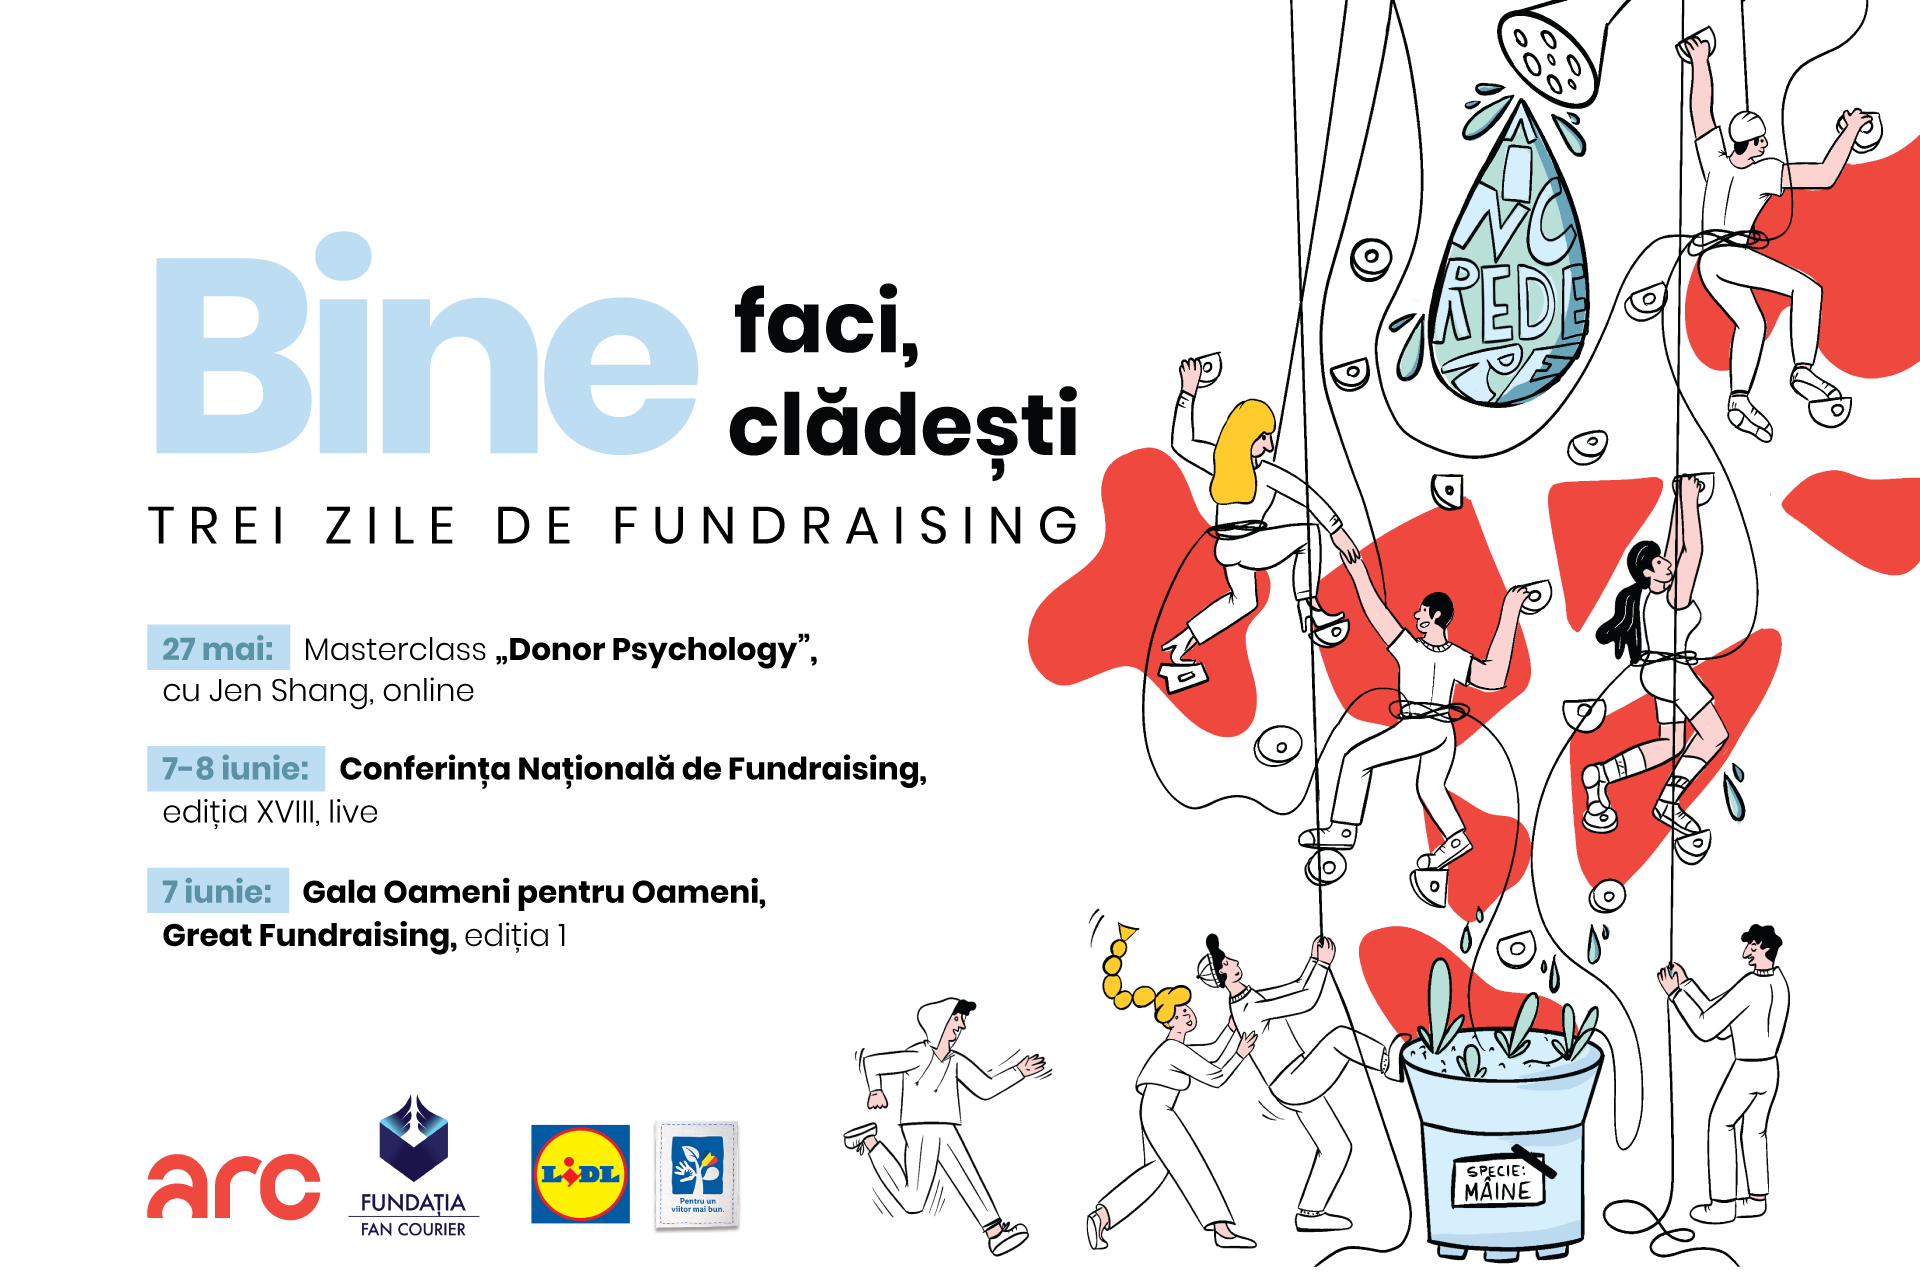 Noua ediție a Conferinței Națională de Fundraising are loc pe 7-8 iunie, la București